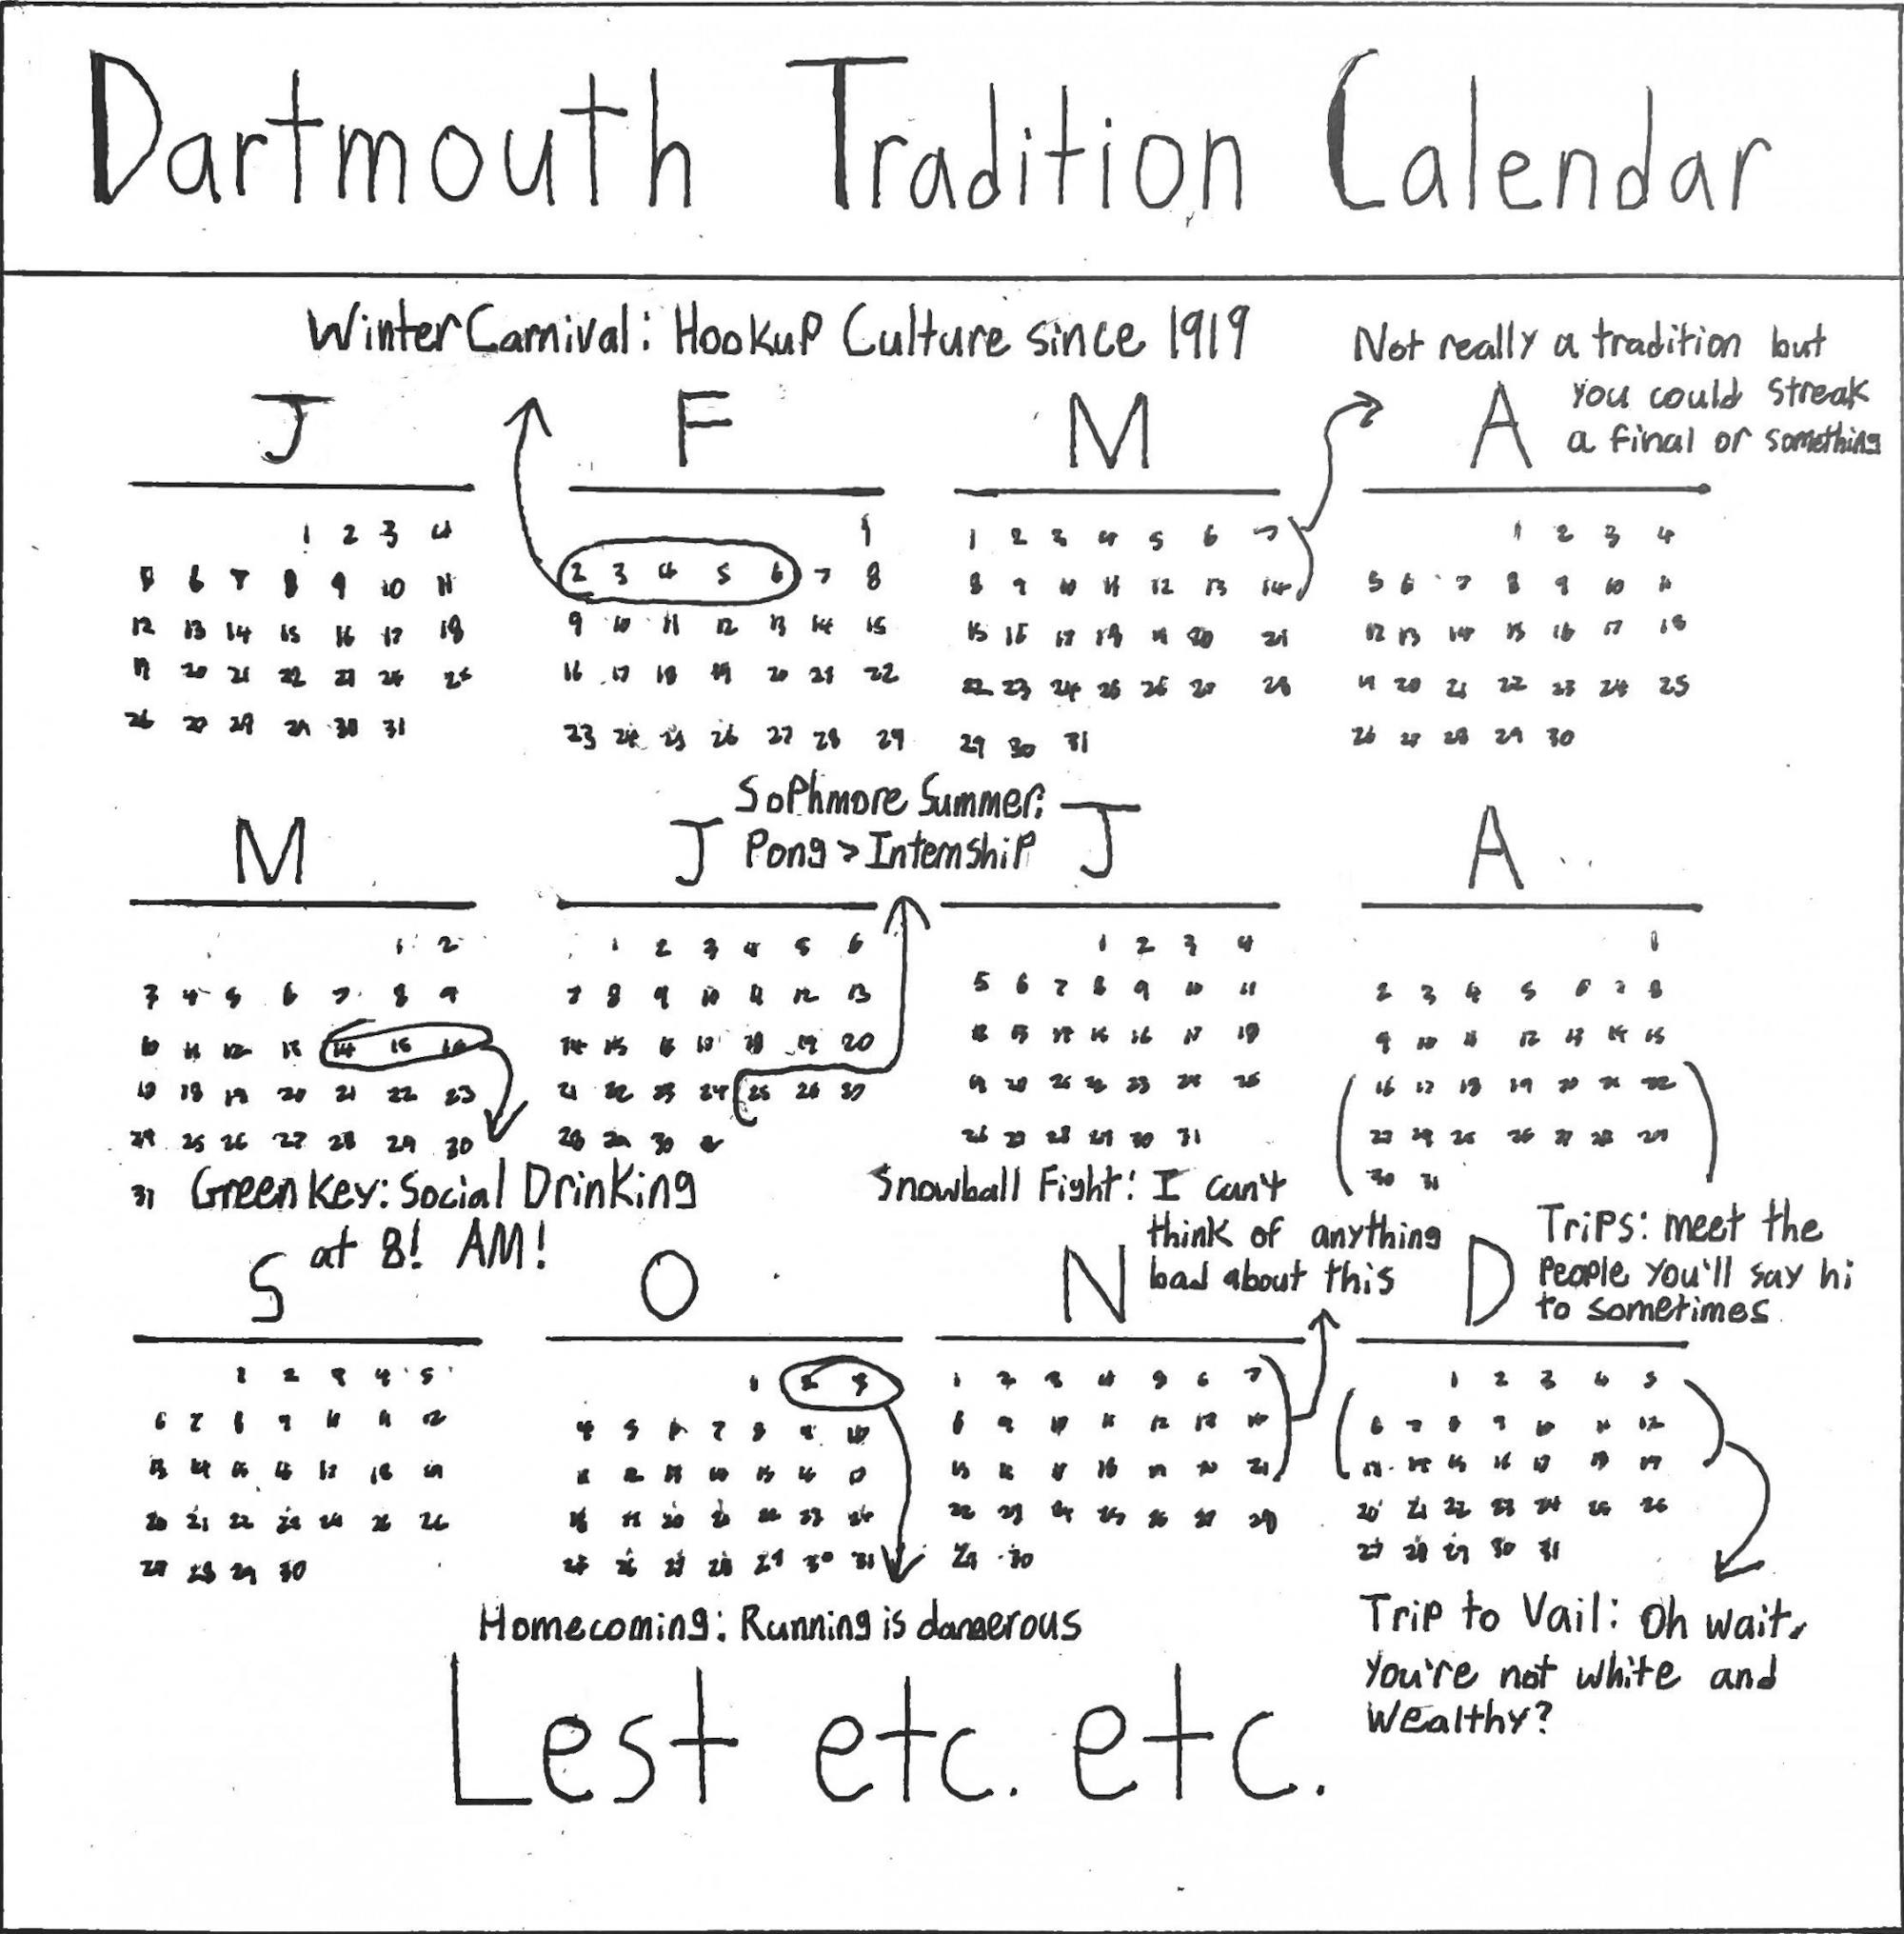 A Dartmouth Year.jpg